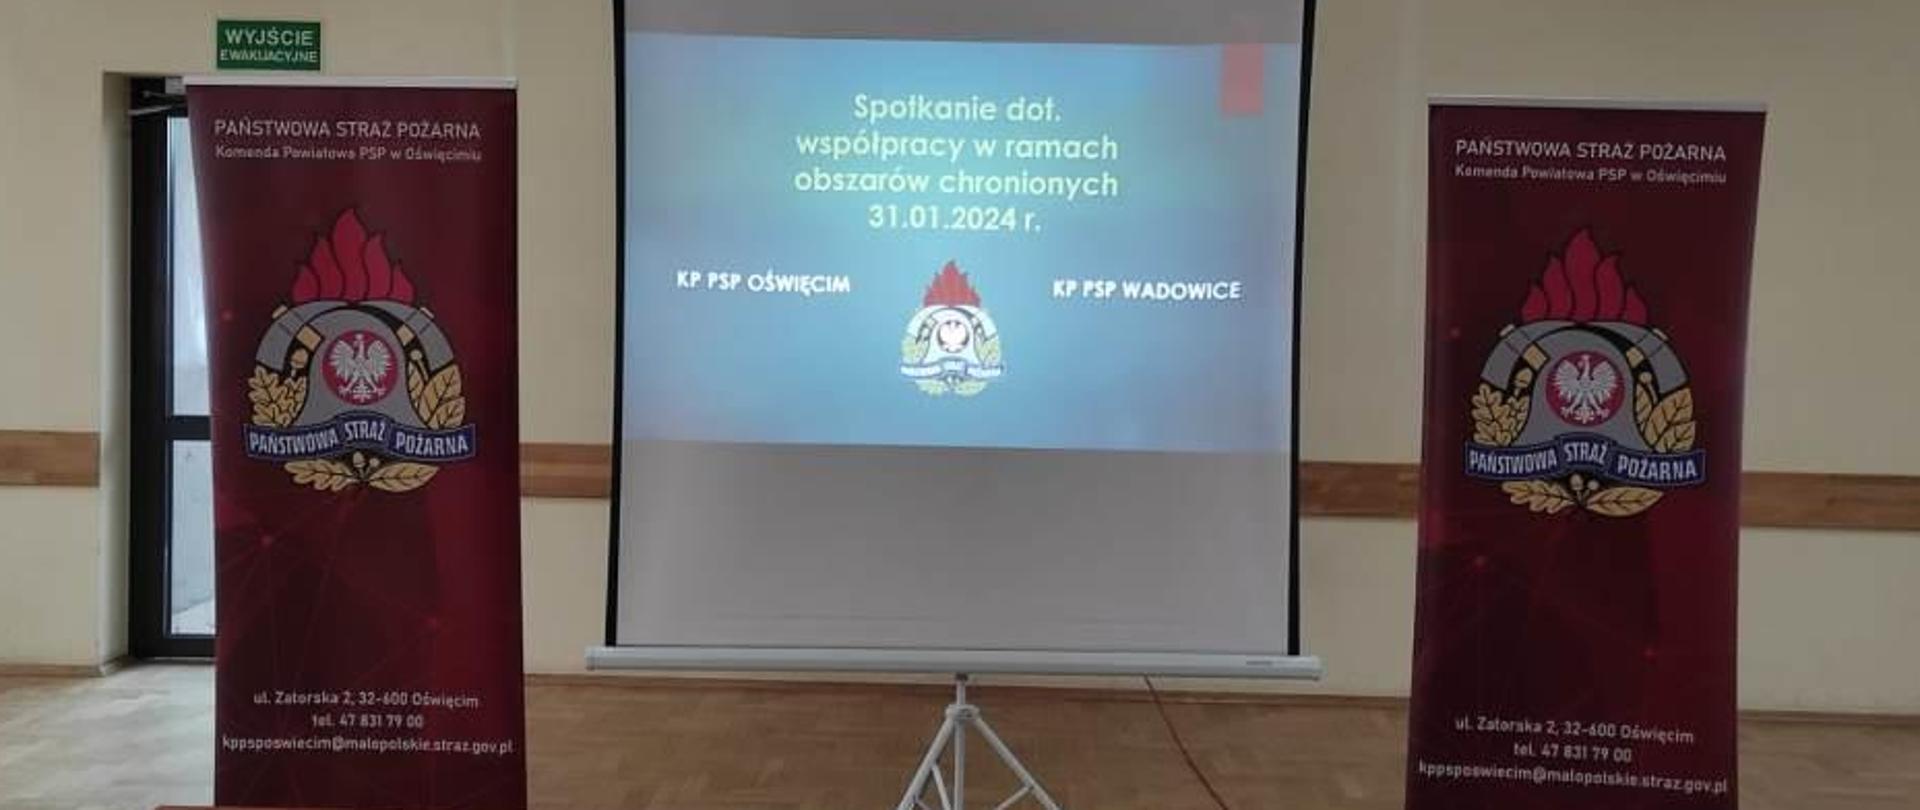 Spotkanie w KP PSP Oświęcim i KP PSP Wadowice w sprawie współpracy na obszarach chronionych